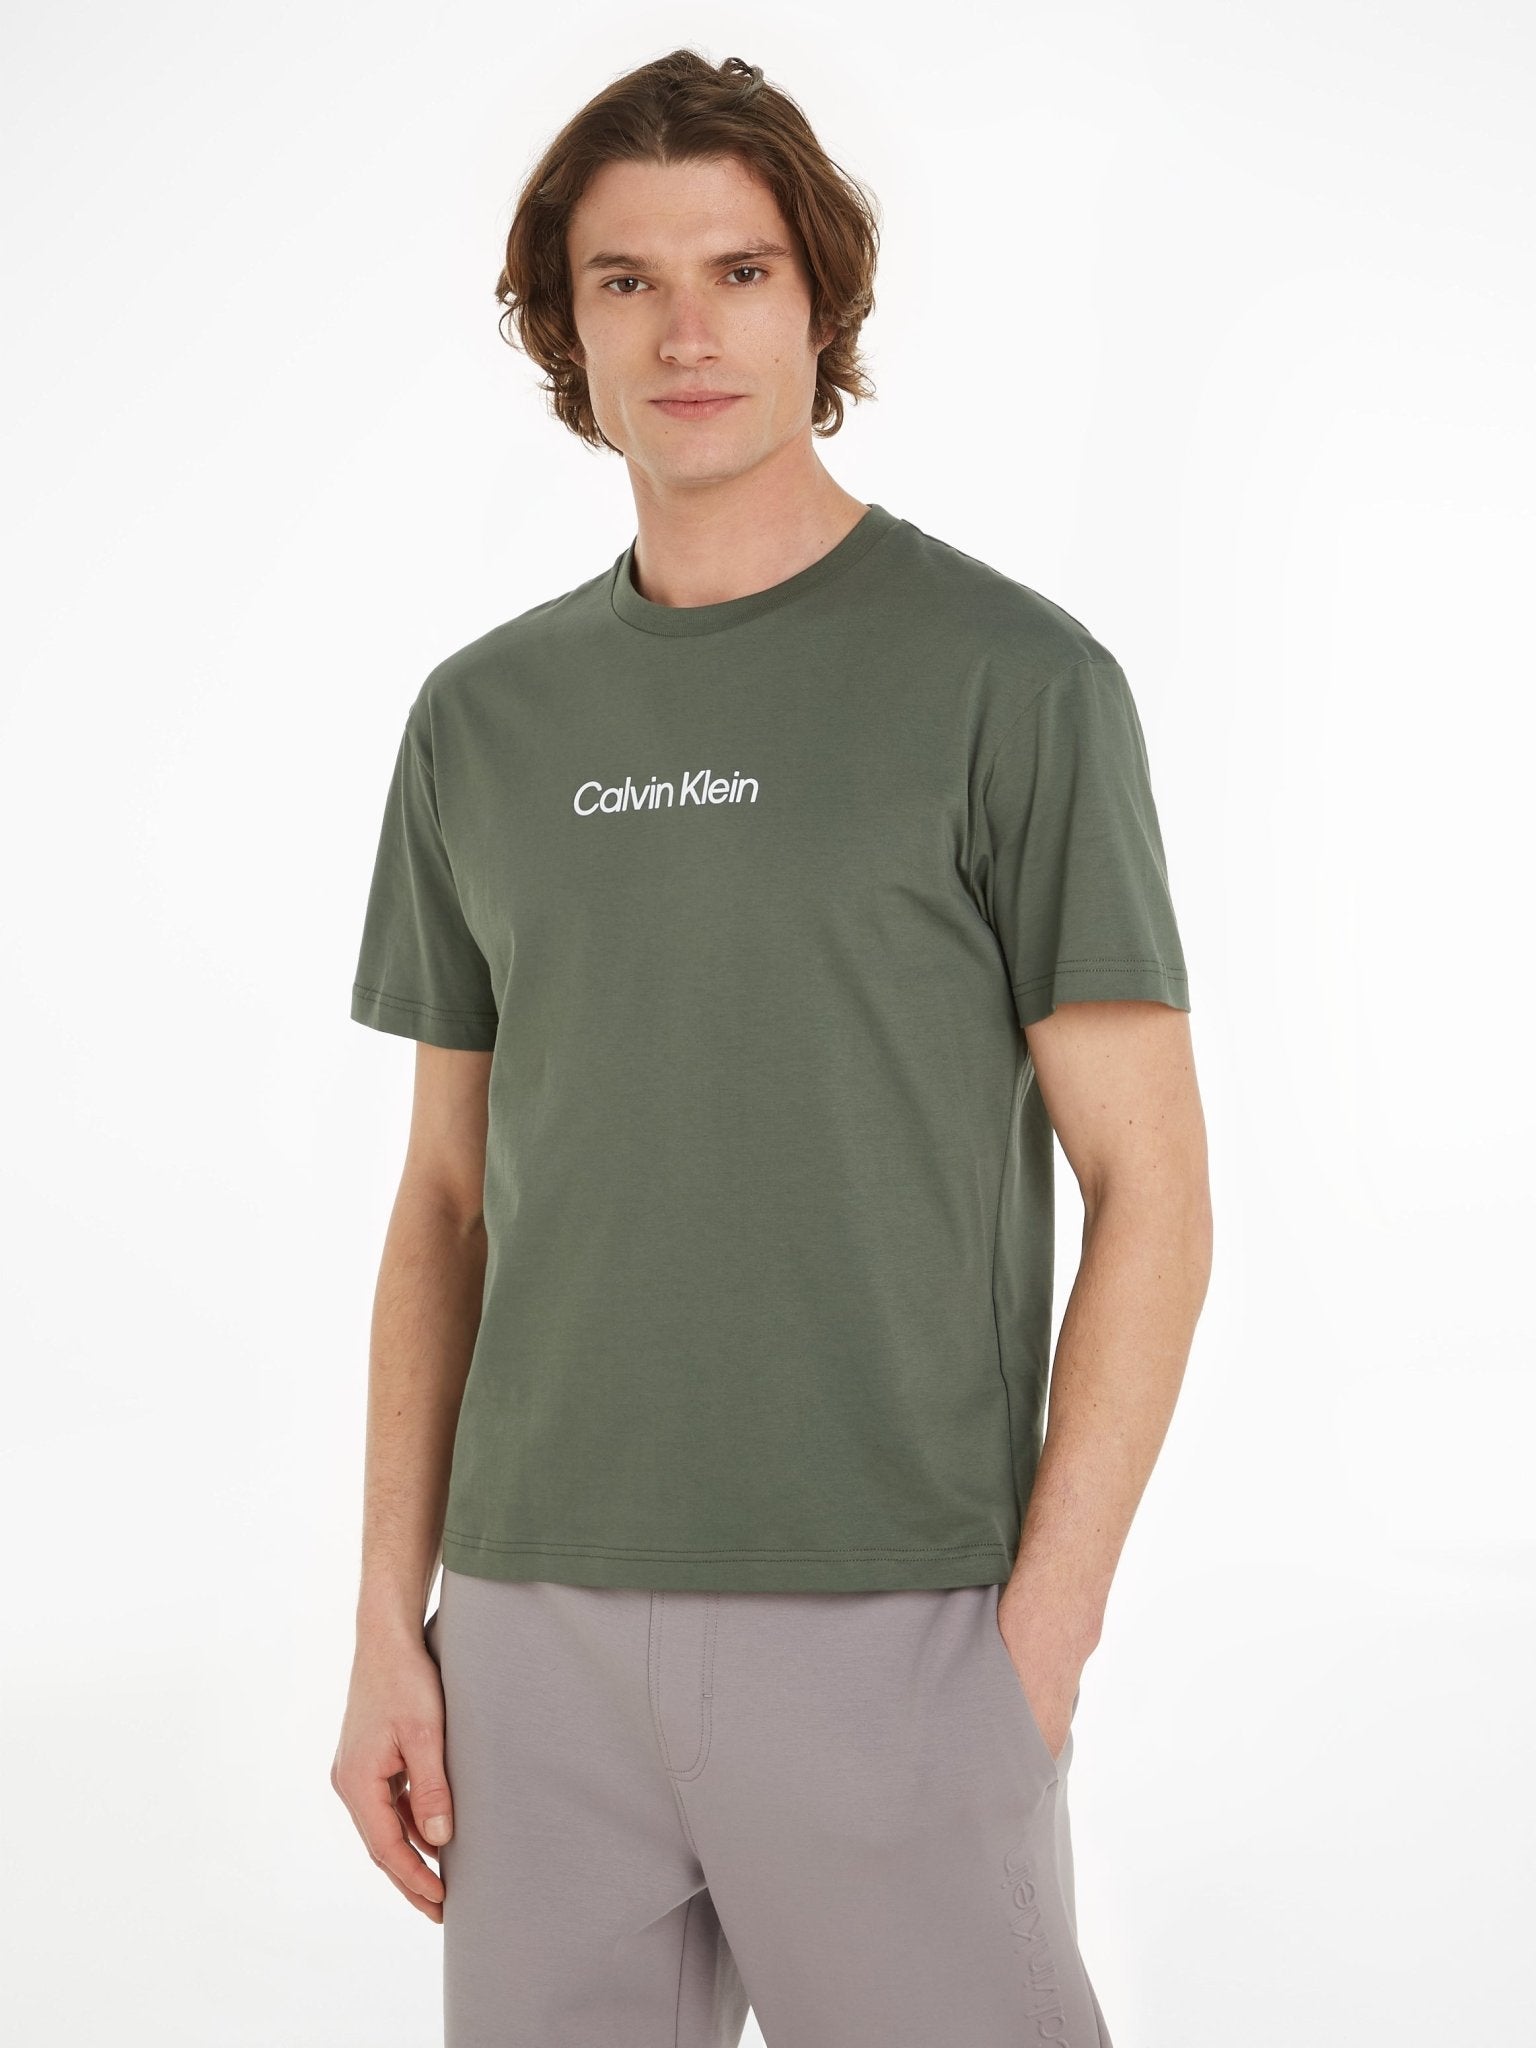 Calvin Klein Logo Tee - Matt O'Brien Fashions